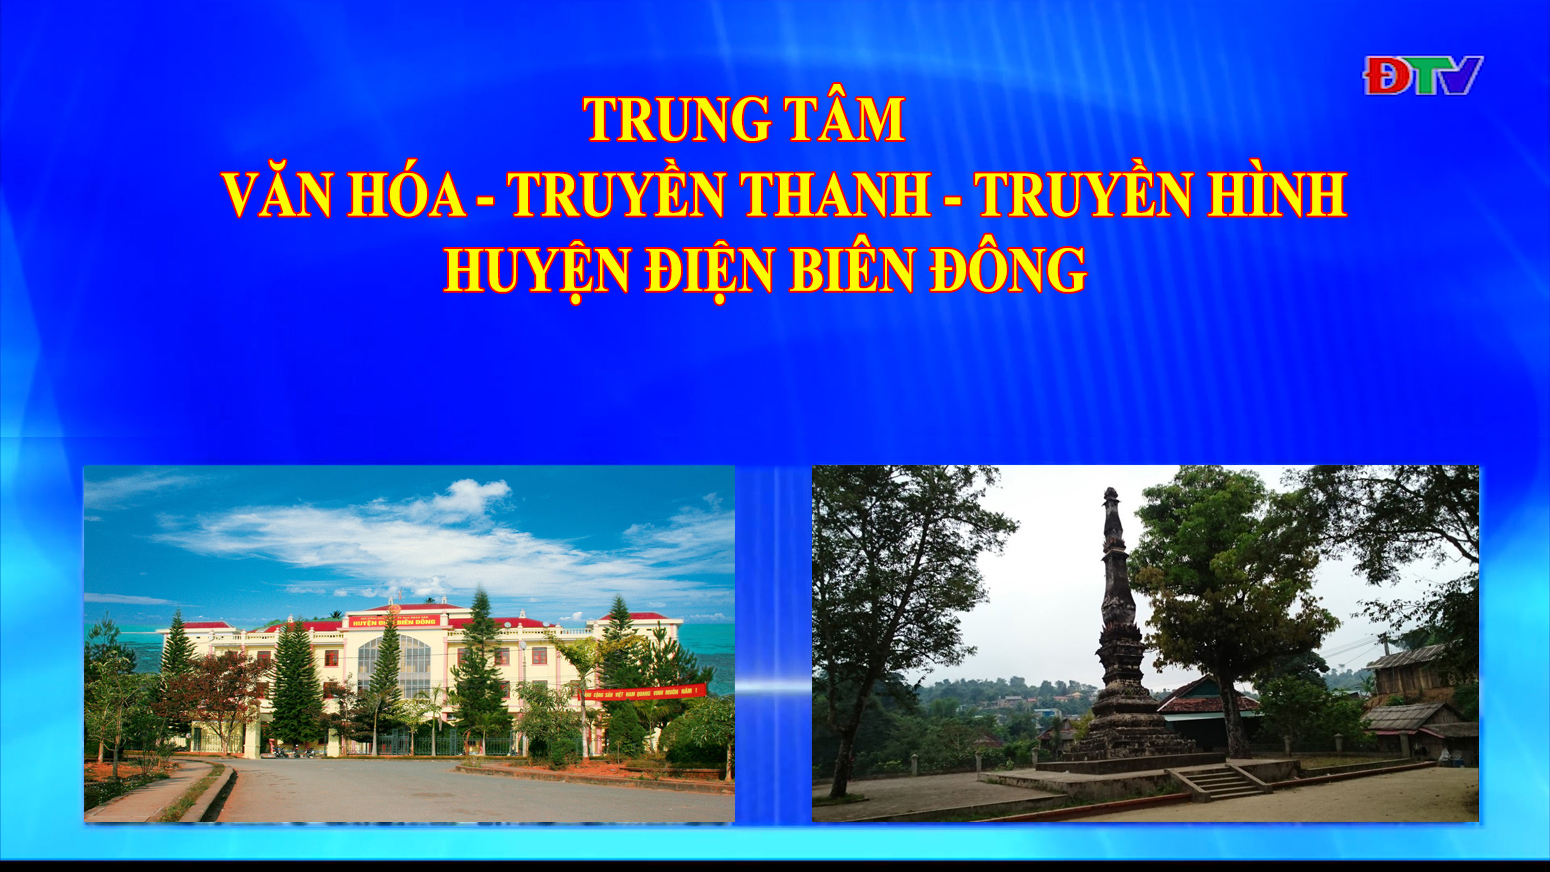 Trung tâm VH-TTTH huyện Điện Biên Đông (Ngày 22-5-2021)